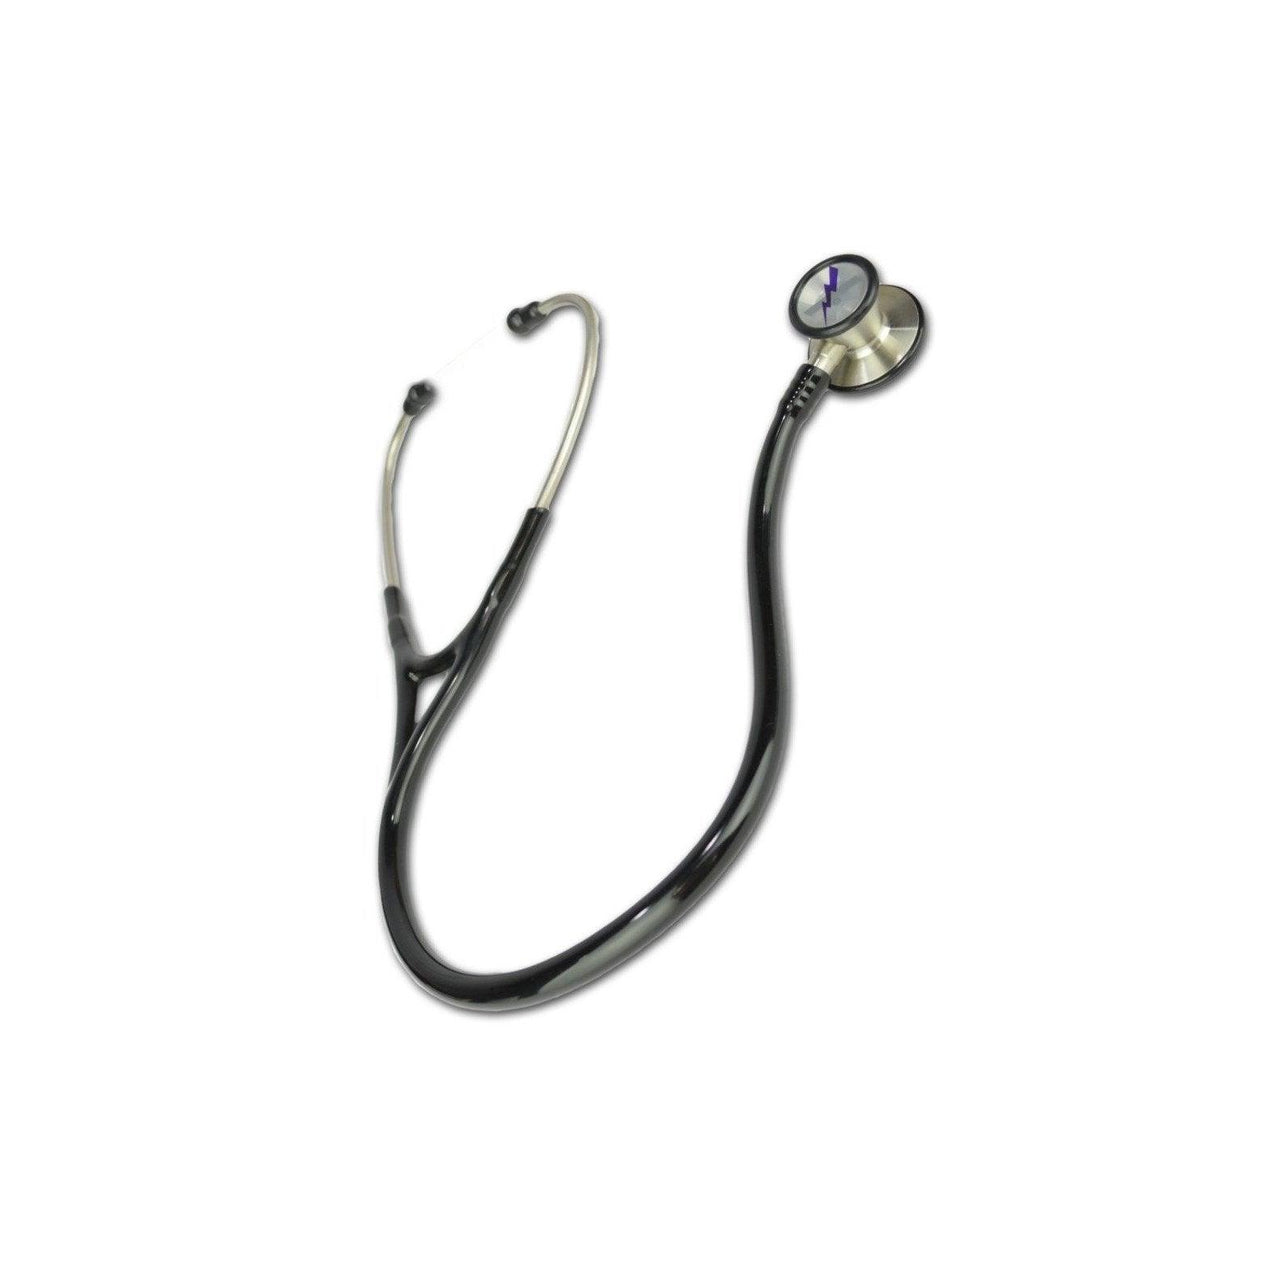 Cardiology Stethoscope - Vendor